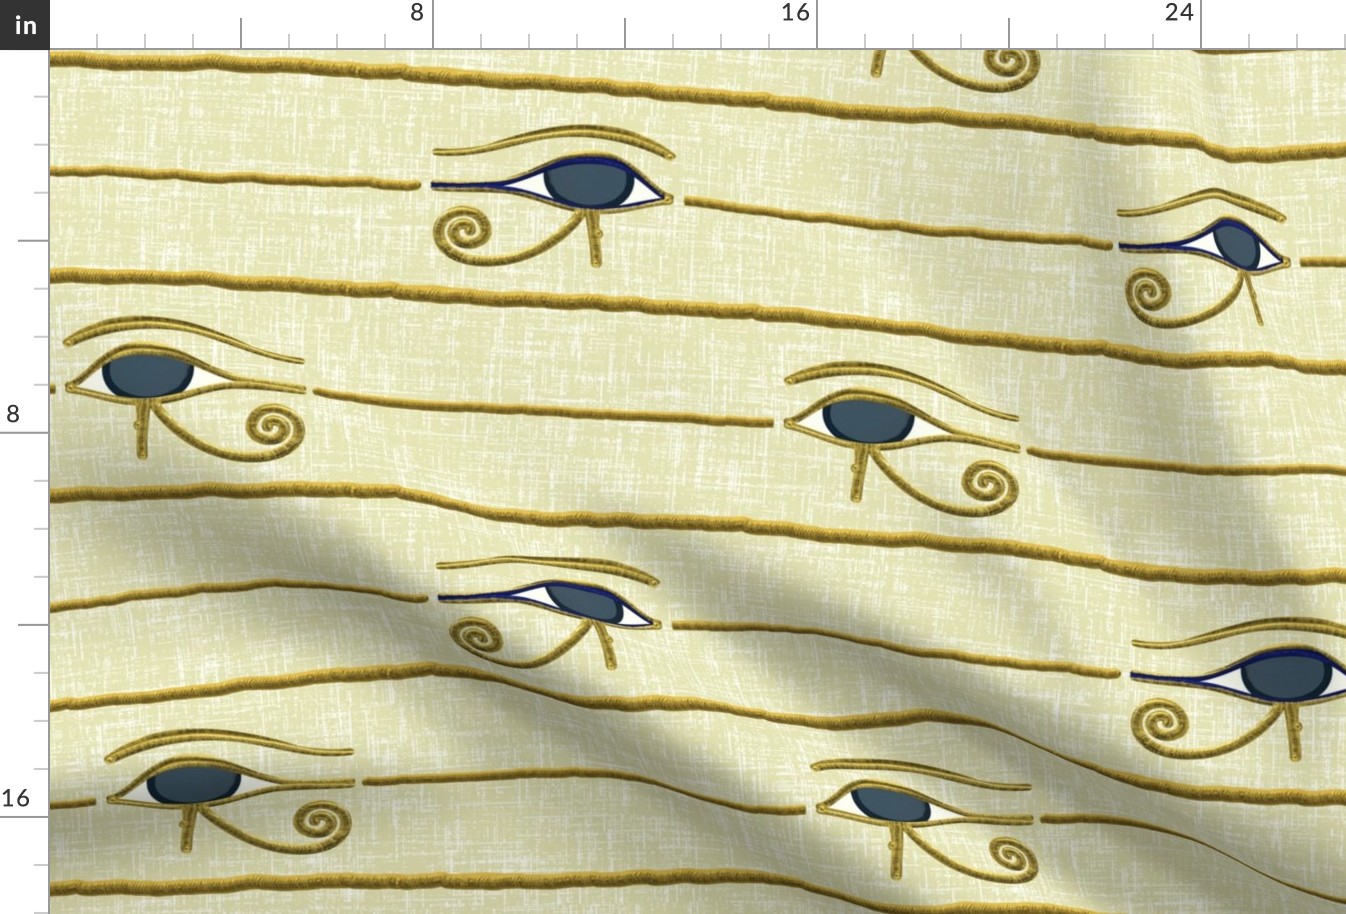 Eye of Horus, Eye of Ra, Stripes on Linen (Light) by Su_G_©SuSchaefer